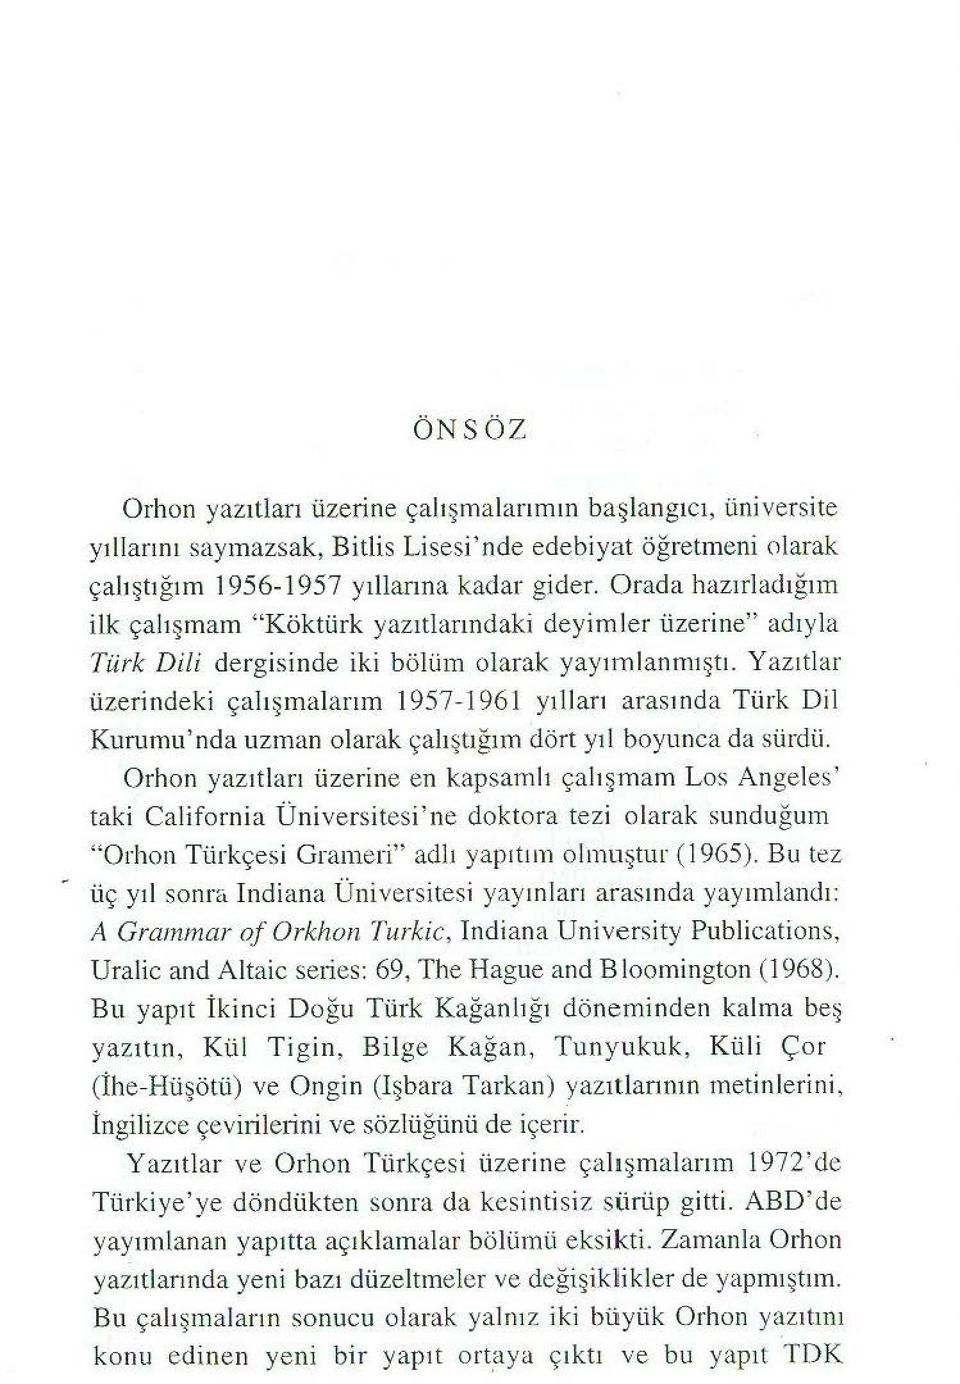 Yazıtlar üzerindeki çalışınalarım 1957-1961 y ılları arasında Türk Dil Kurumu' nda uzman olarak çalıştığını dört yıl boyunca da sürdü.